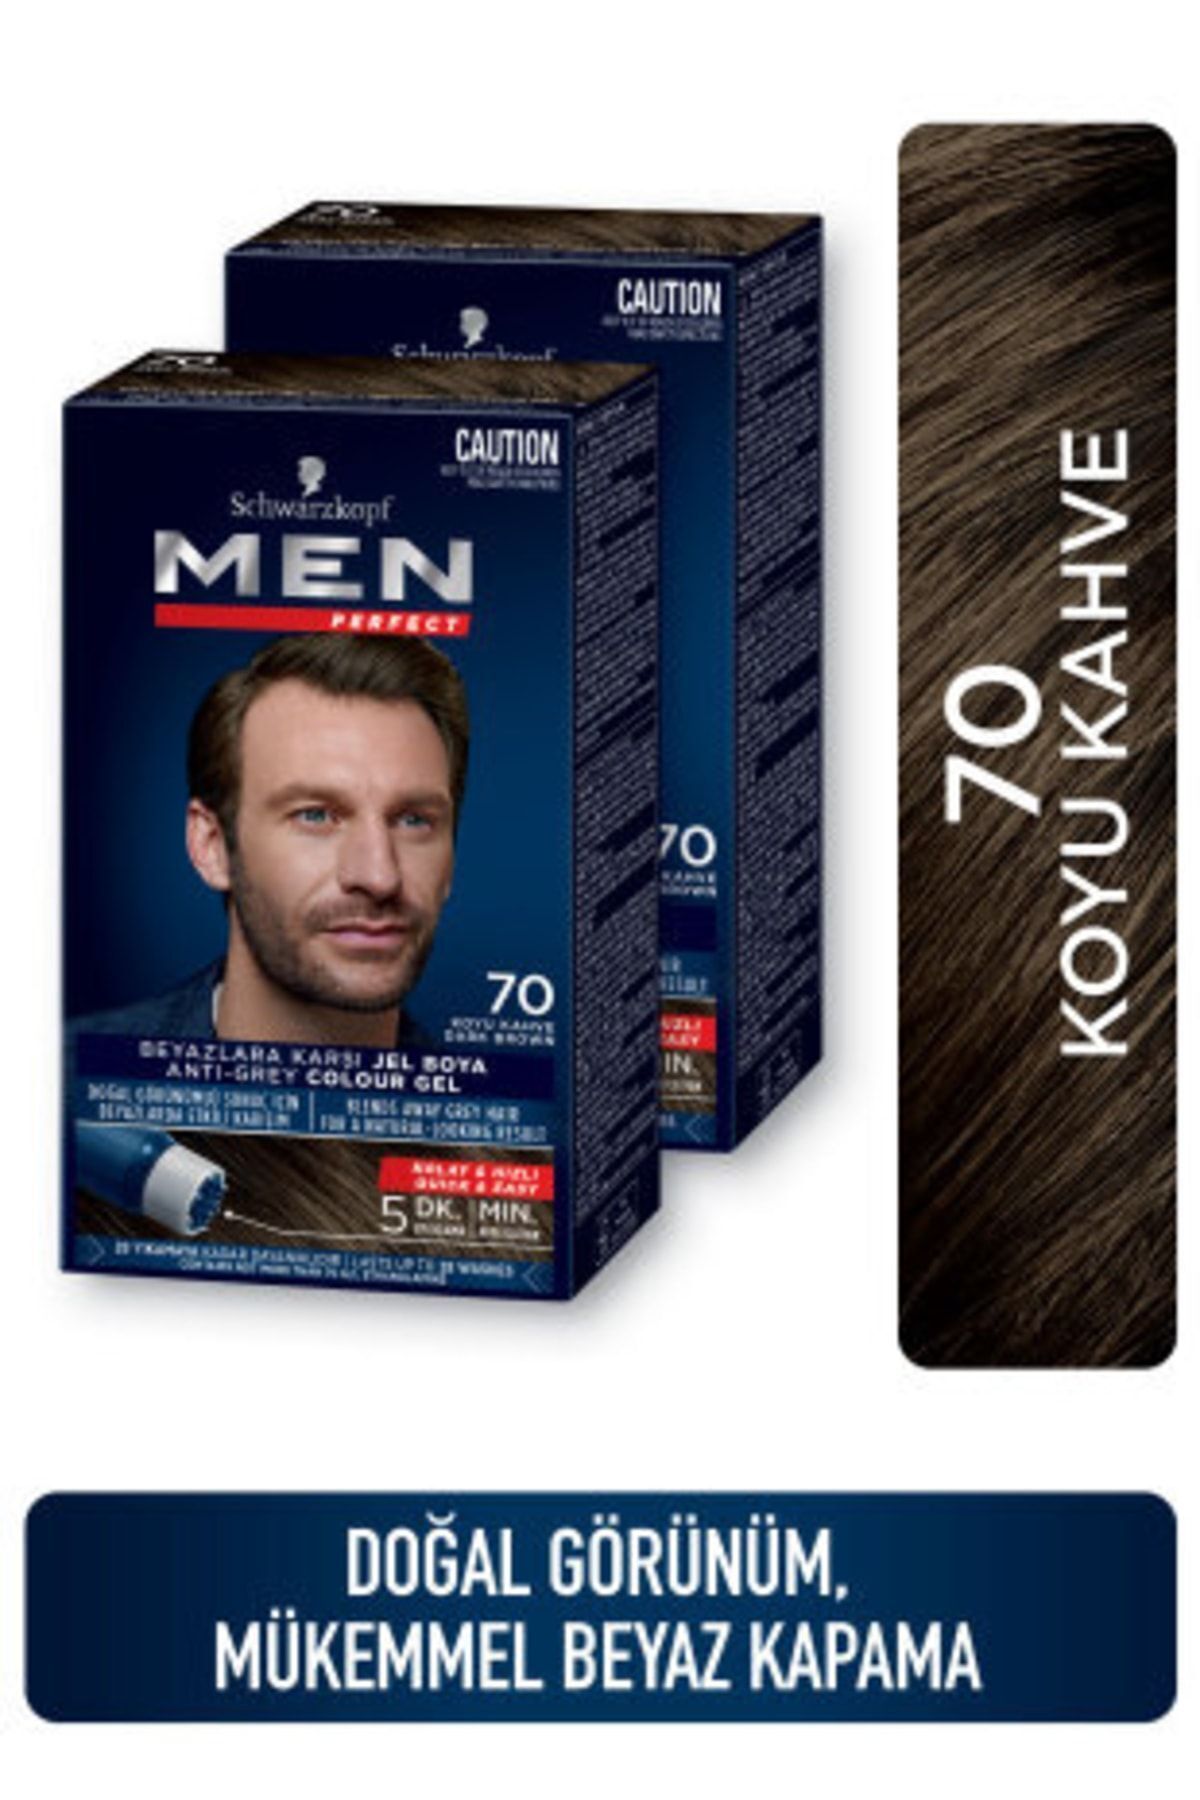 Men Perfect Saç Boyası 70 - Koyu Kahve  X 2 Adet